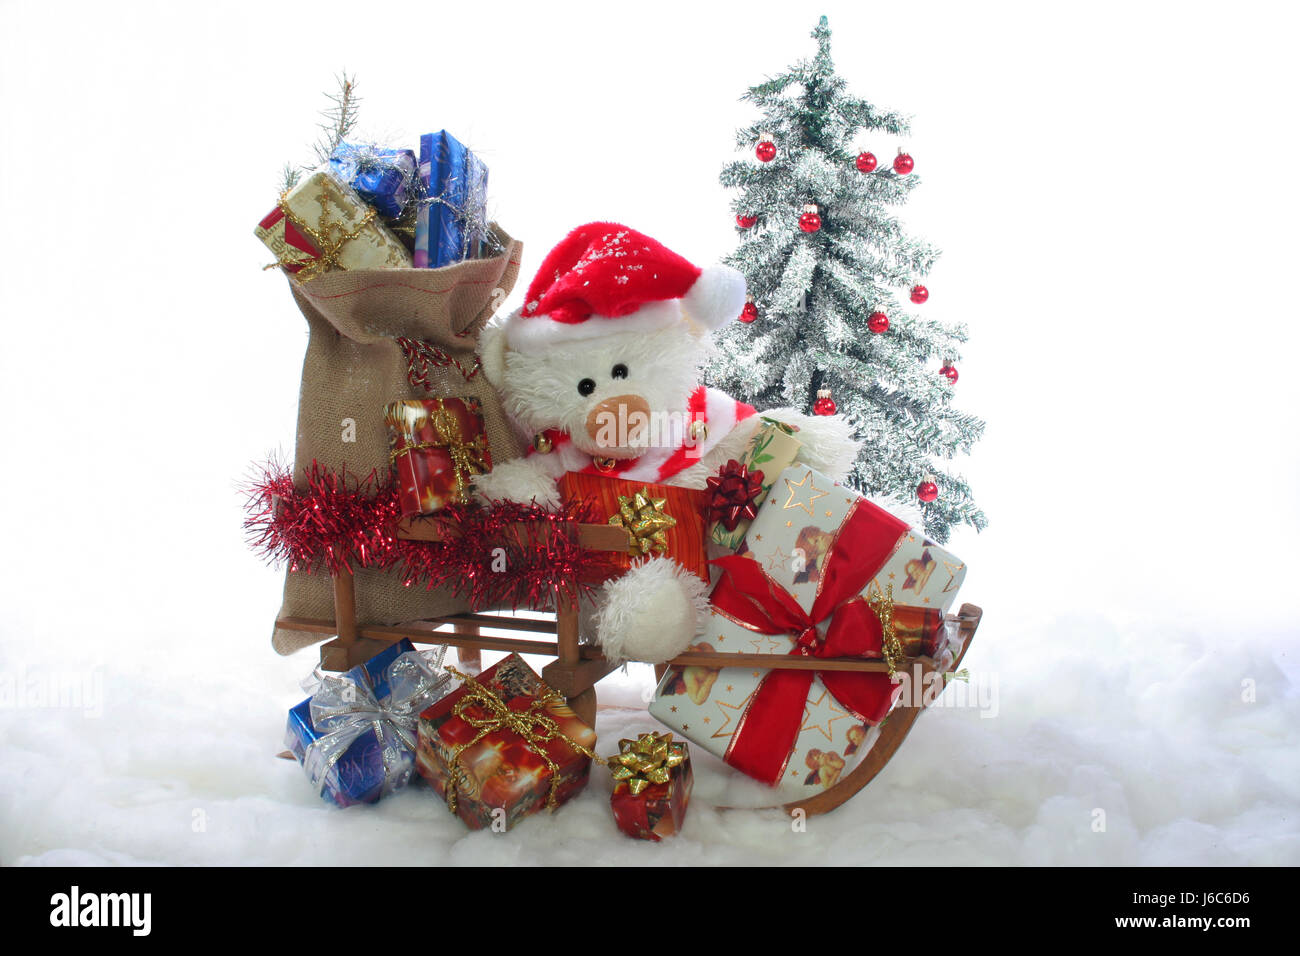 weihnachtsmann weihnachten weihnachtsbaum geschenke schnee schlitten advent Stock Photo